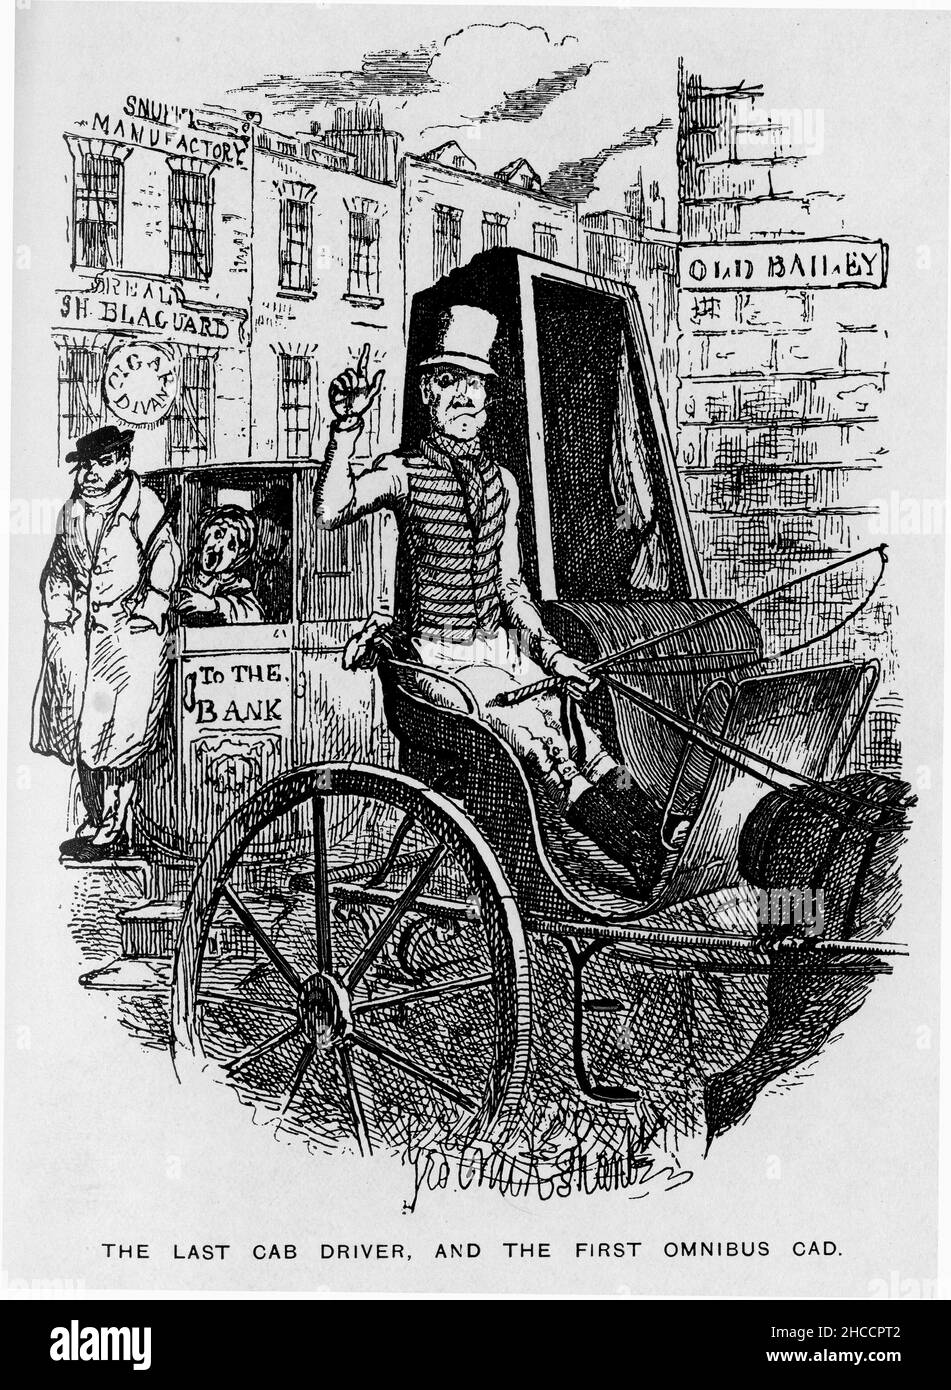 Gravur des letzten Taxifahrers und des ersten Omnibus-cad. Eine Szene aus einem viktorianischen Buch von Charles Dickens, veröffentlicht um 1908 Stockfoto